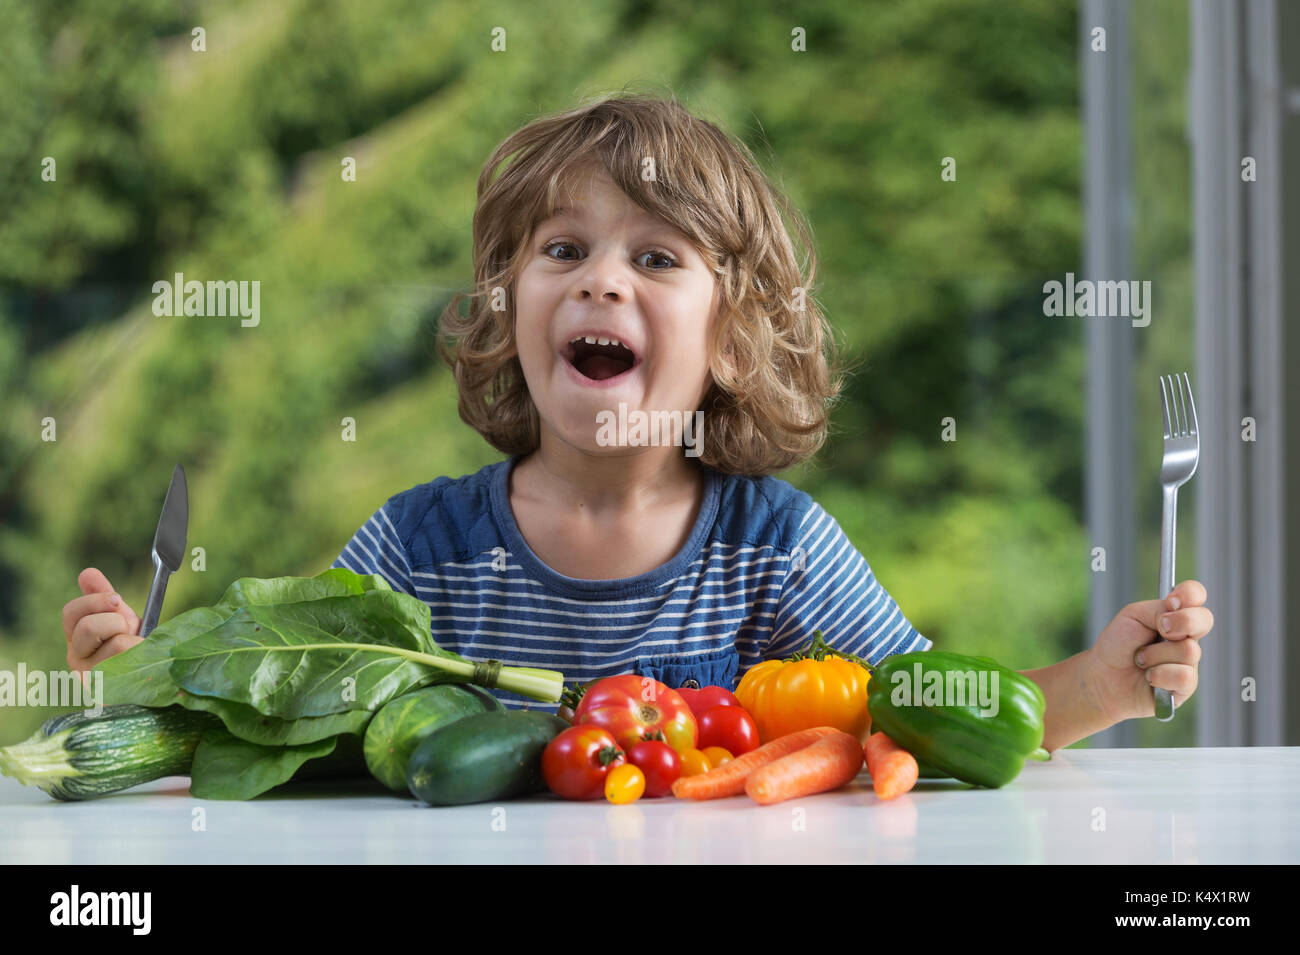 Cute little boy am Tisch über Gemüse essen aufgeregt sitzen, schlechte oder gute Essgewohnheiten, Ernährung und gesundes Essen, zeigt Emotionen Konzept Stockfoto